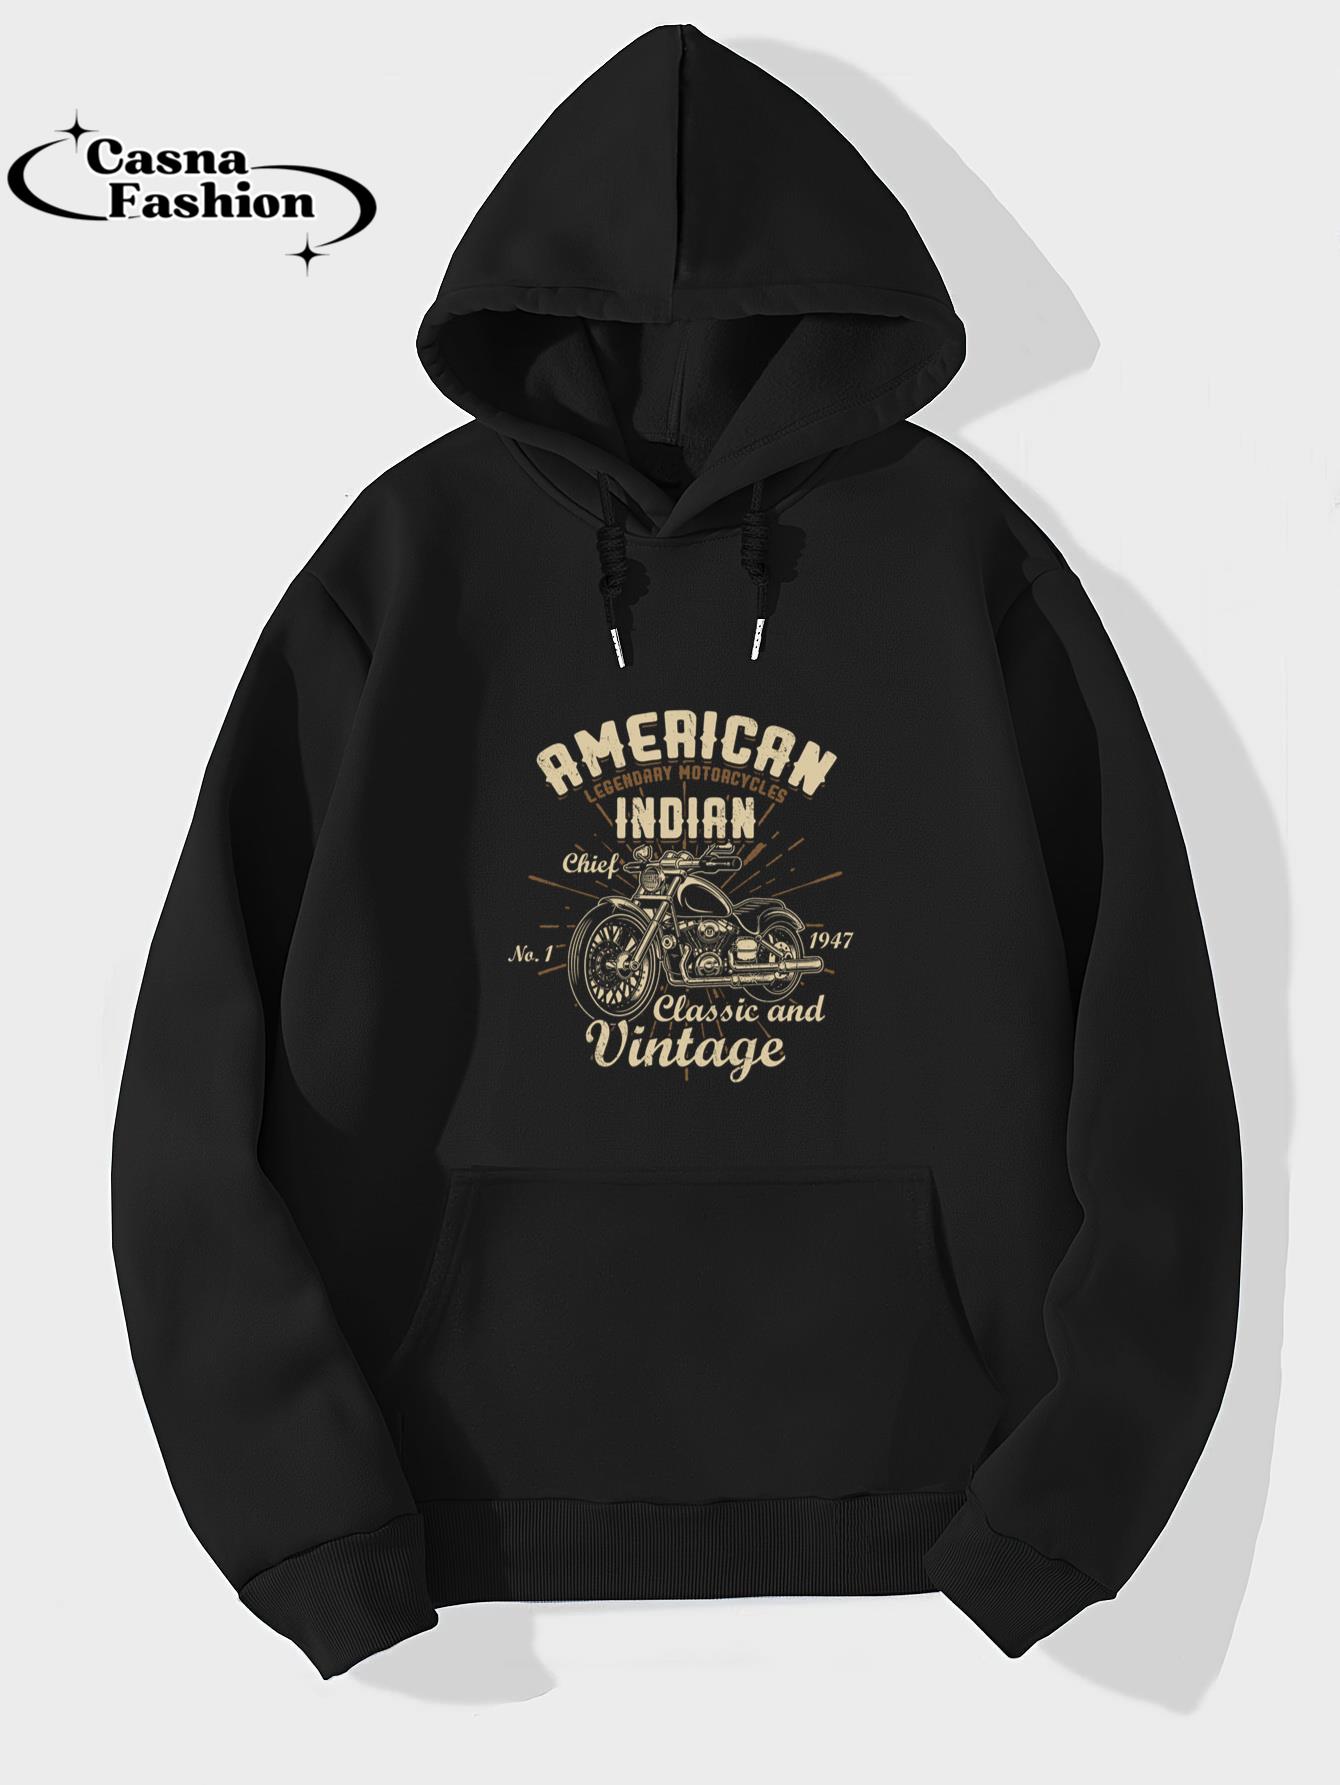 casnafashion_Hoodie_Retro Vintage American Motorcycle Indian for Old Biker Long Sleeve T-Shirt_hoodie_black hoodie